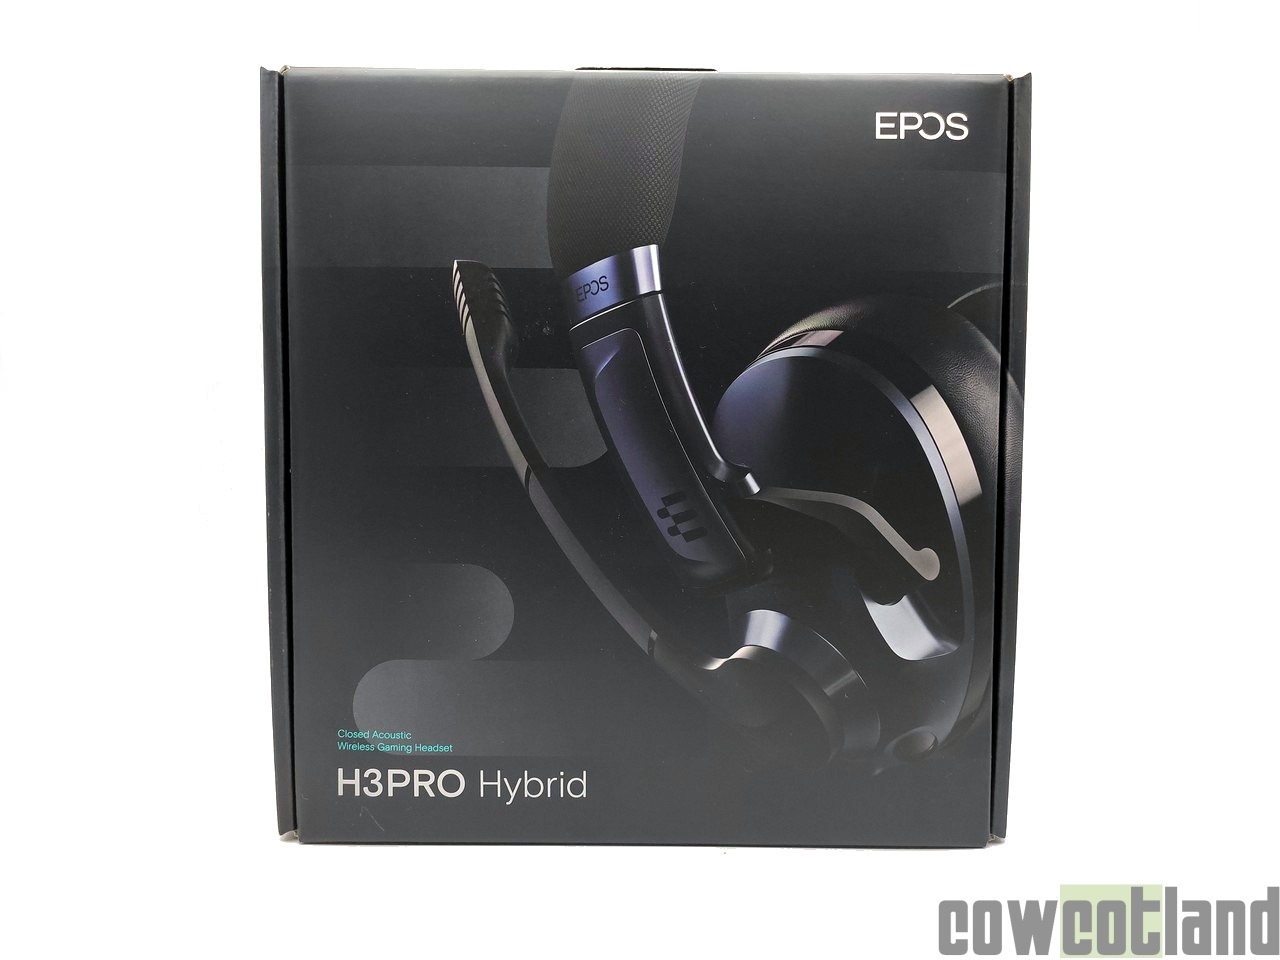 Image 46884, galerie Test casque EPOS H3 Pro Hybrid, du vrai casque sans-fil